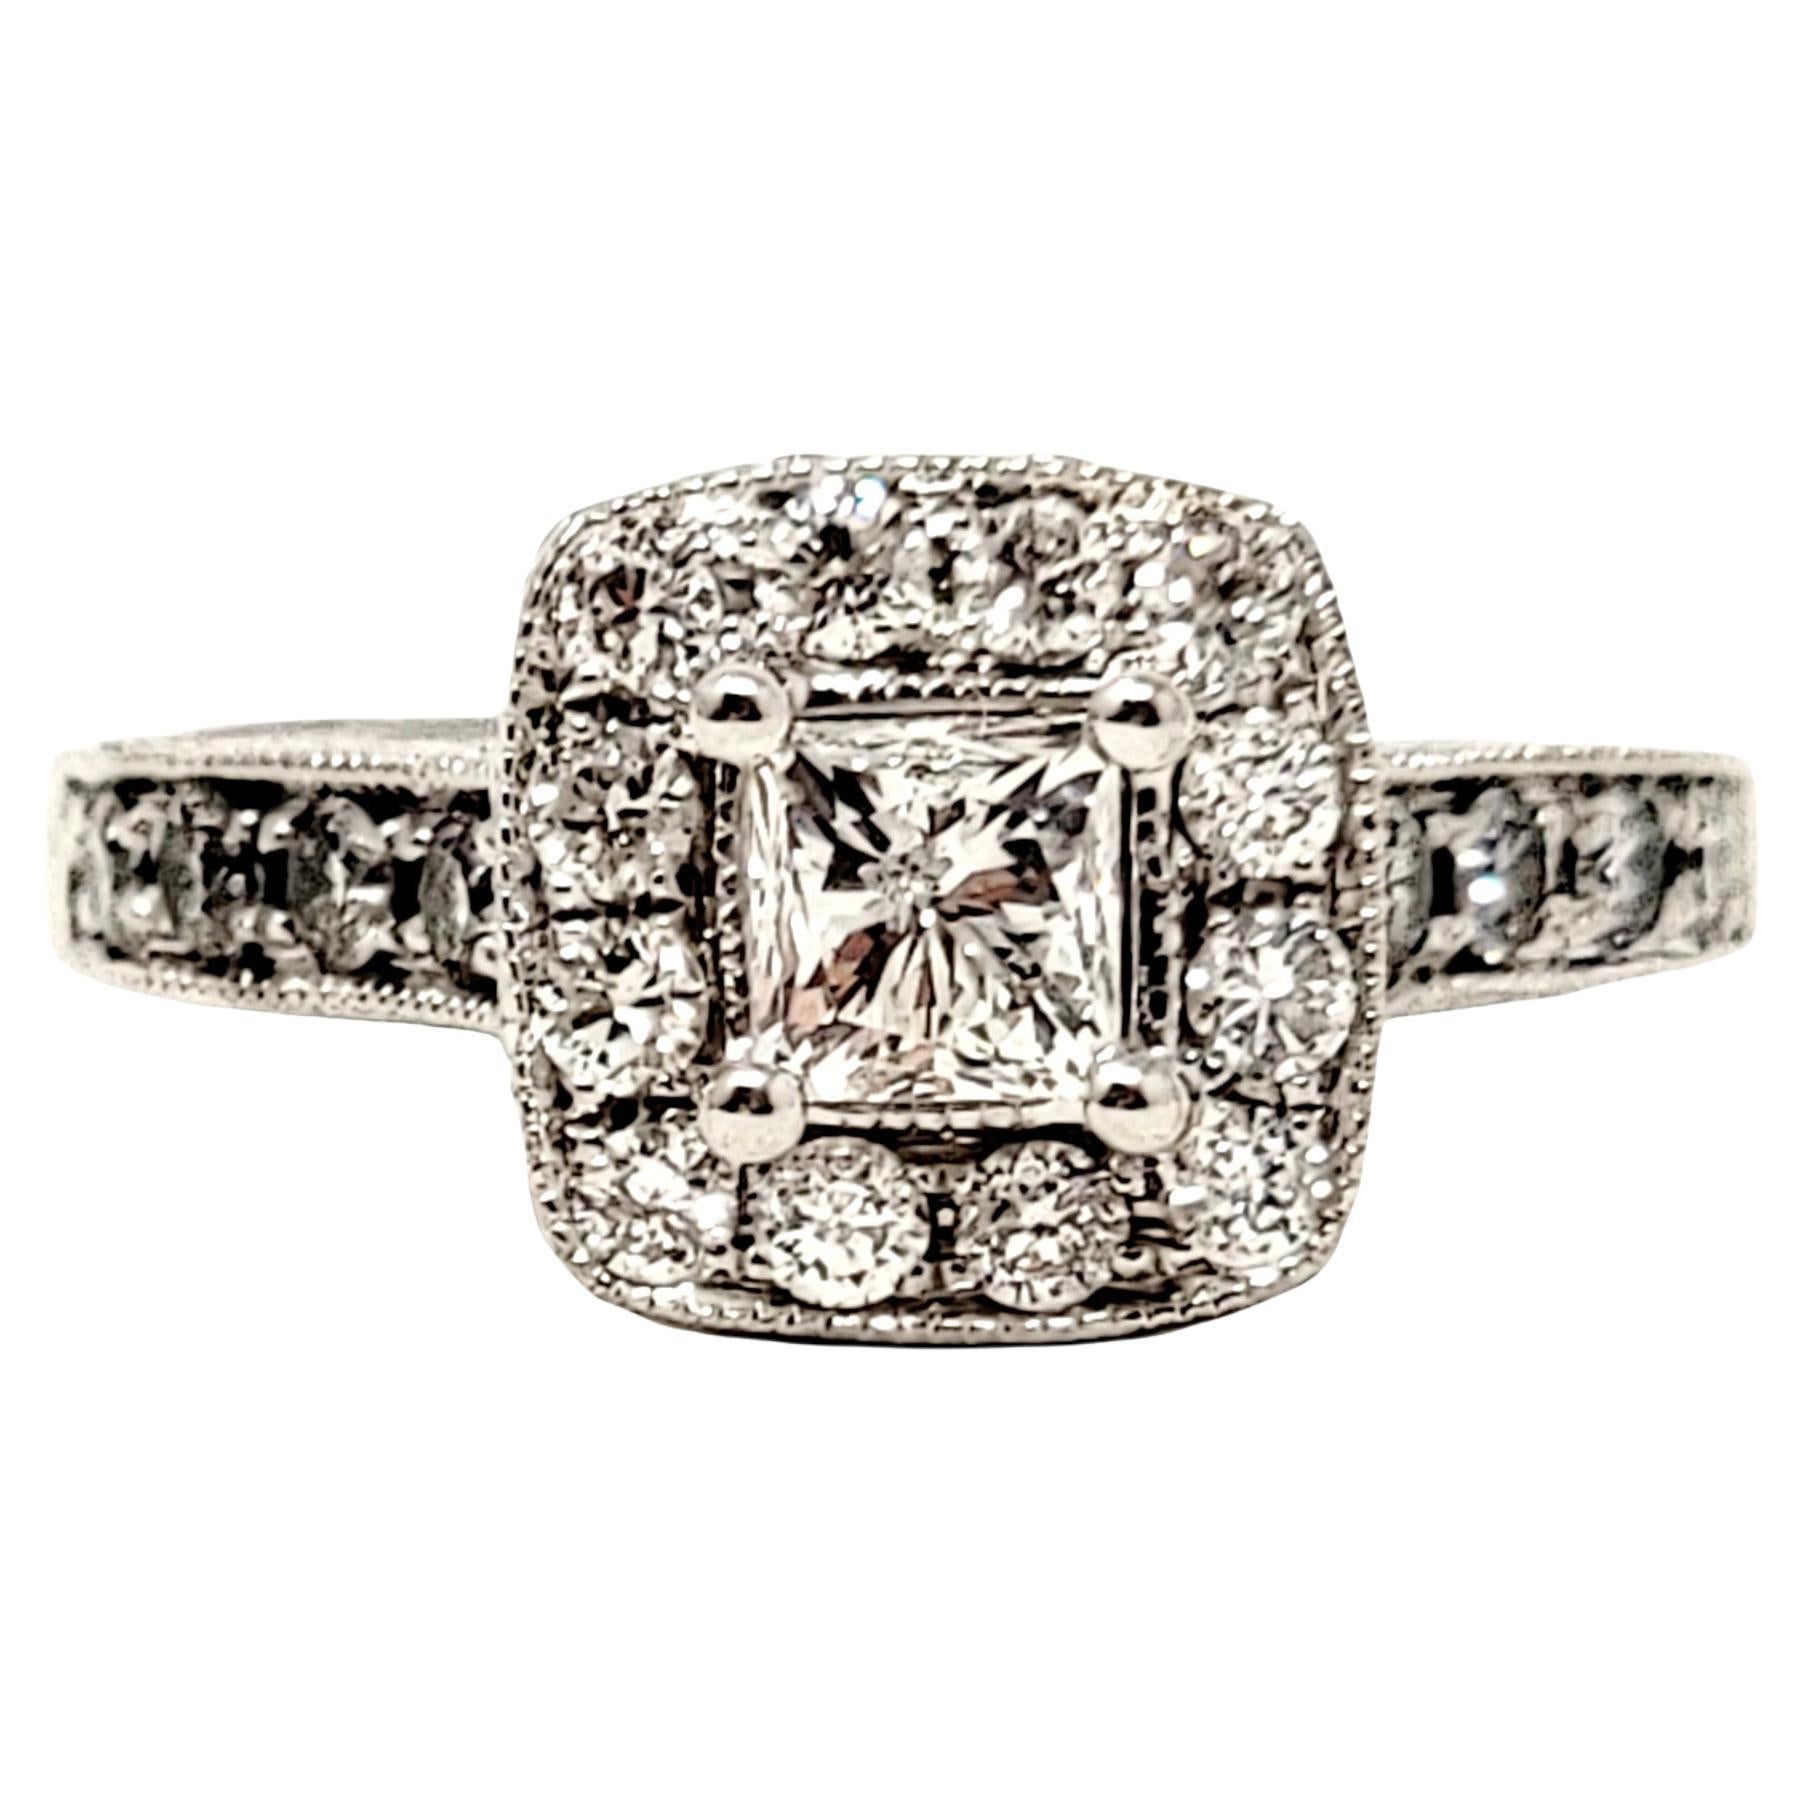 1.38 Carat Total Princess Cut Diamond Halo Engagement Ring 14 Karat White Gold